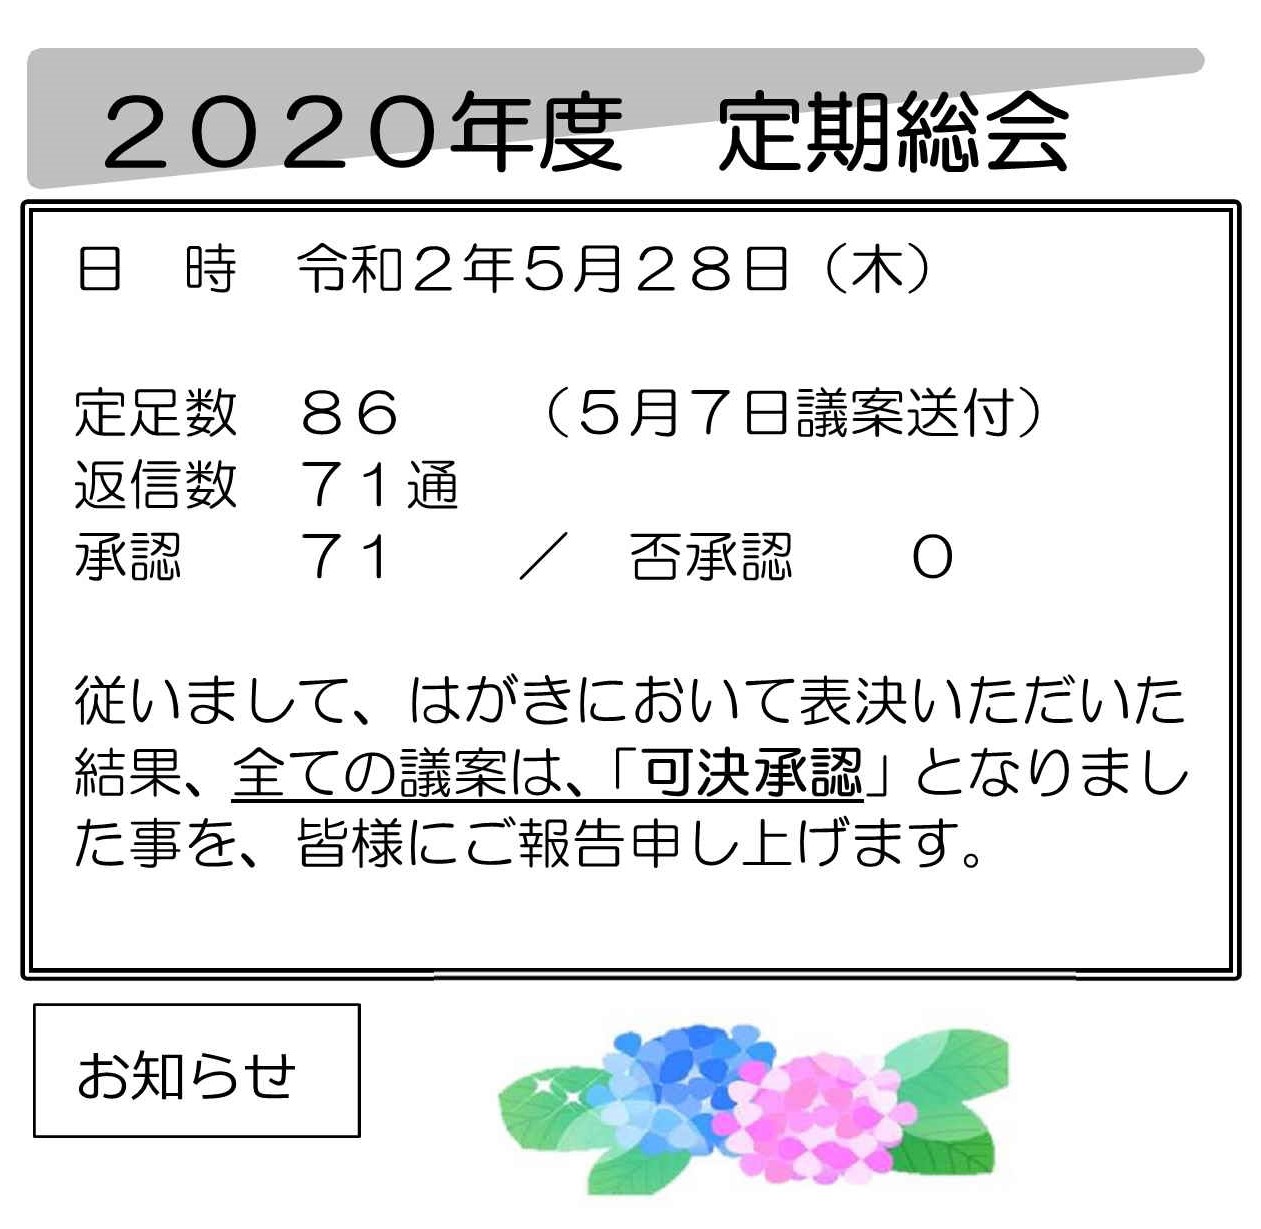 soukai2020